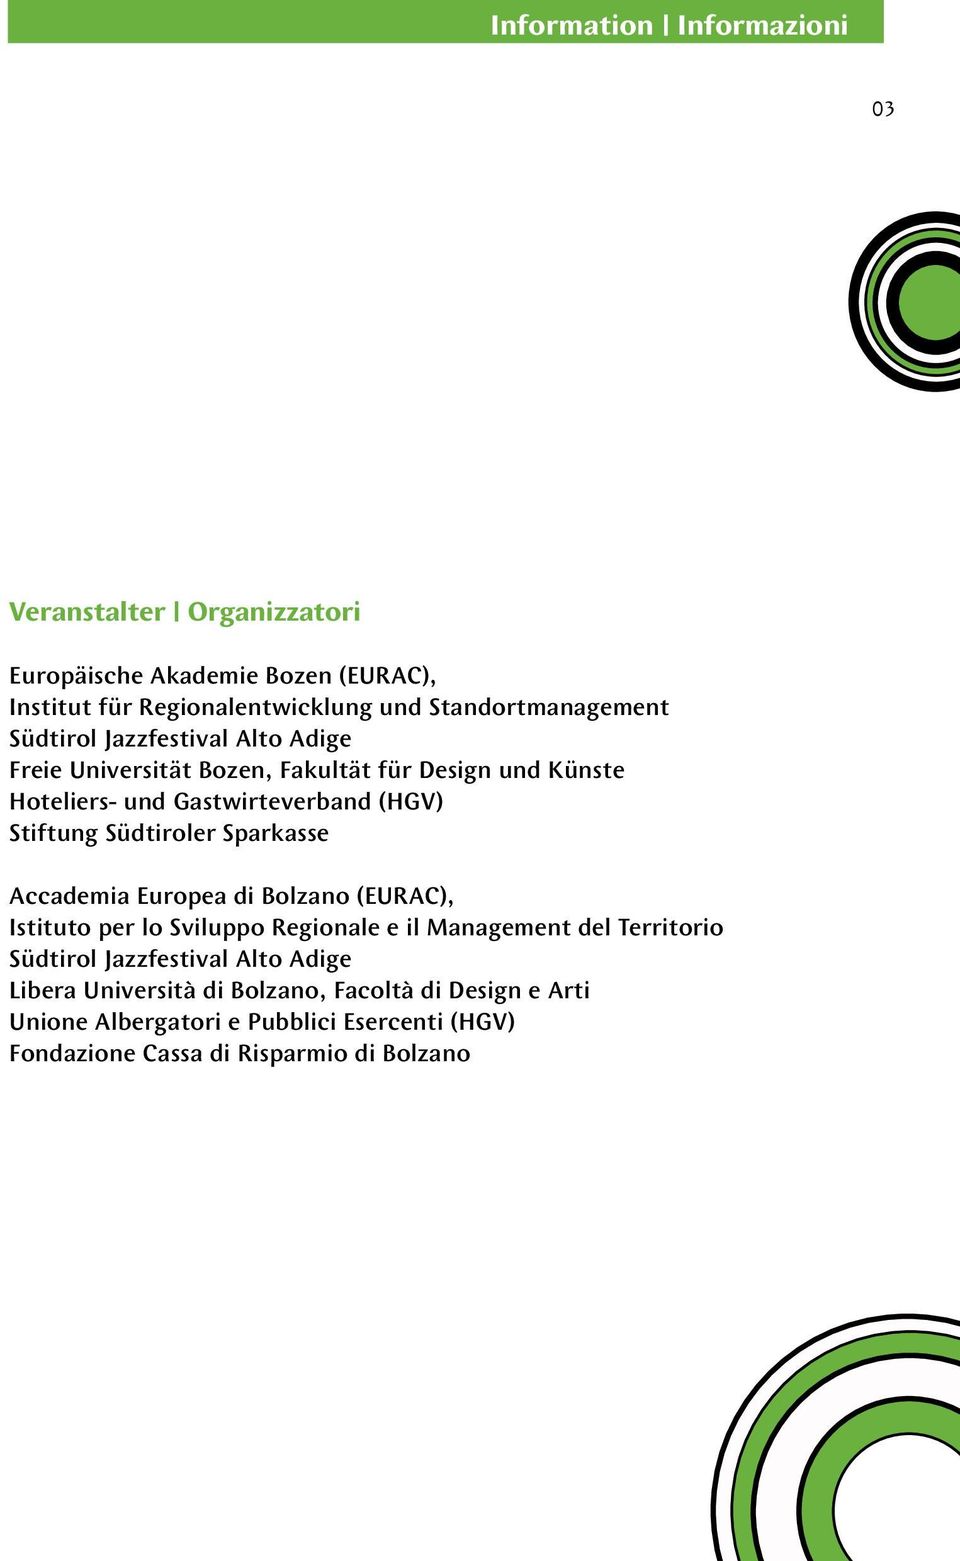 Stiftung Südtiroler Sparkasse Accademia Europea di Bolzano (EURAC), Istituto per lo Sviluppo Regionale e il Management del Territorio Südtirol